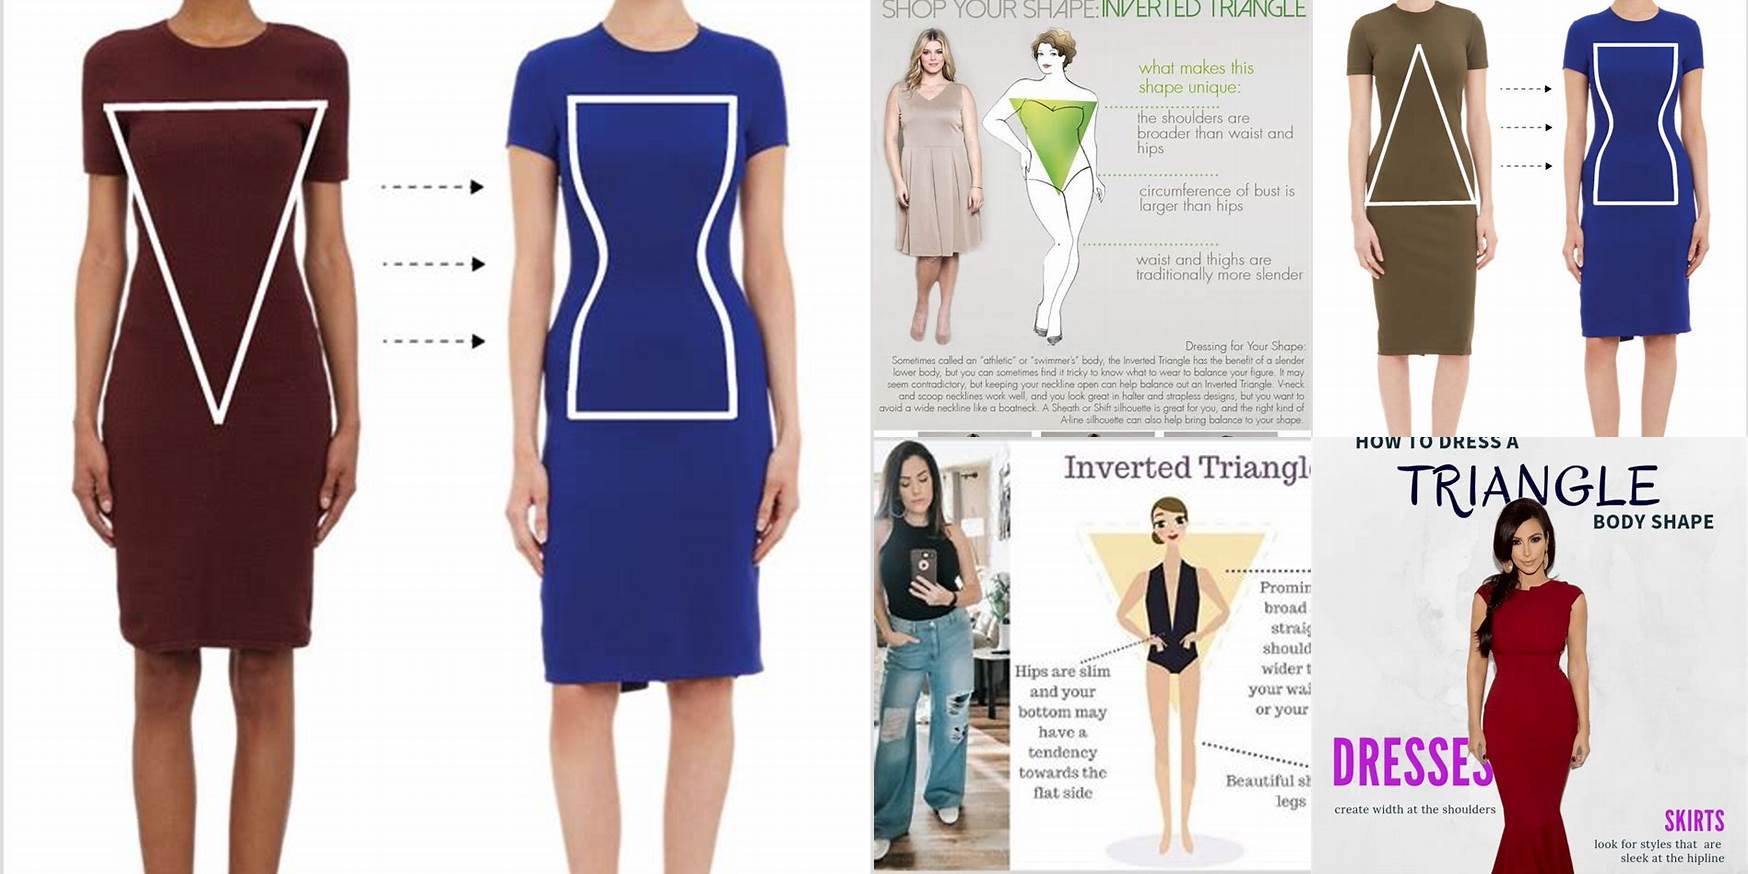 How To Dress Triangle Body Shape